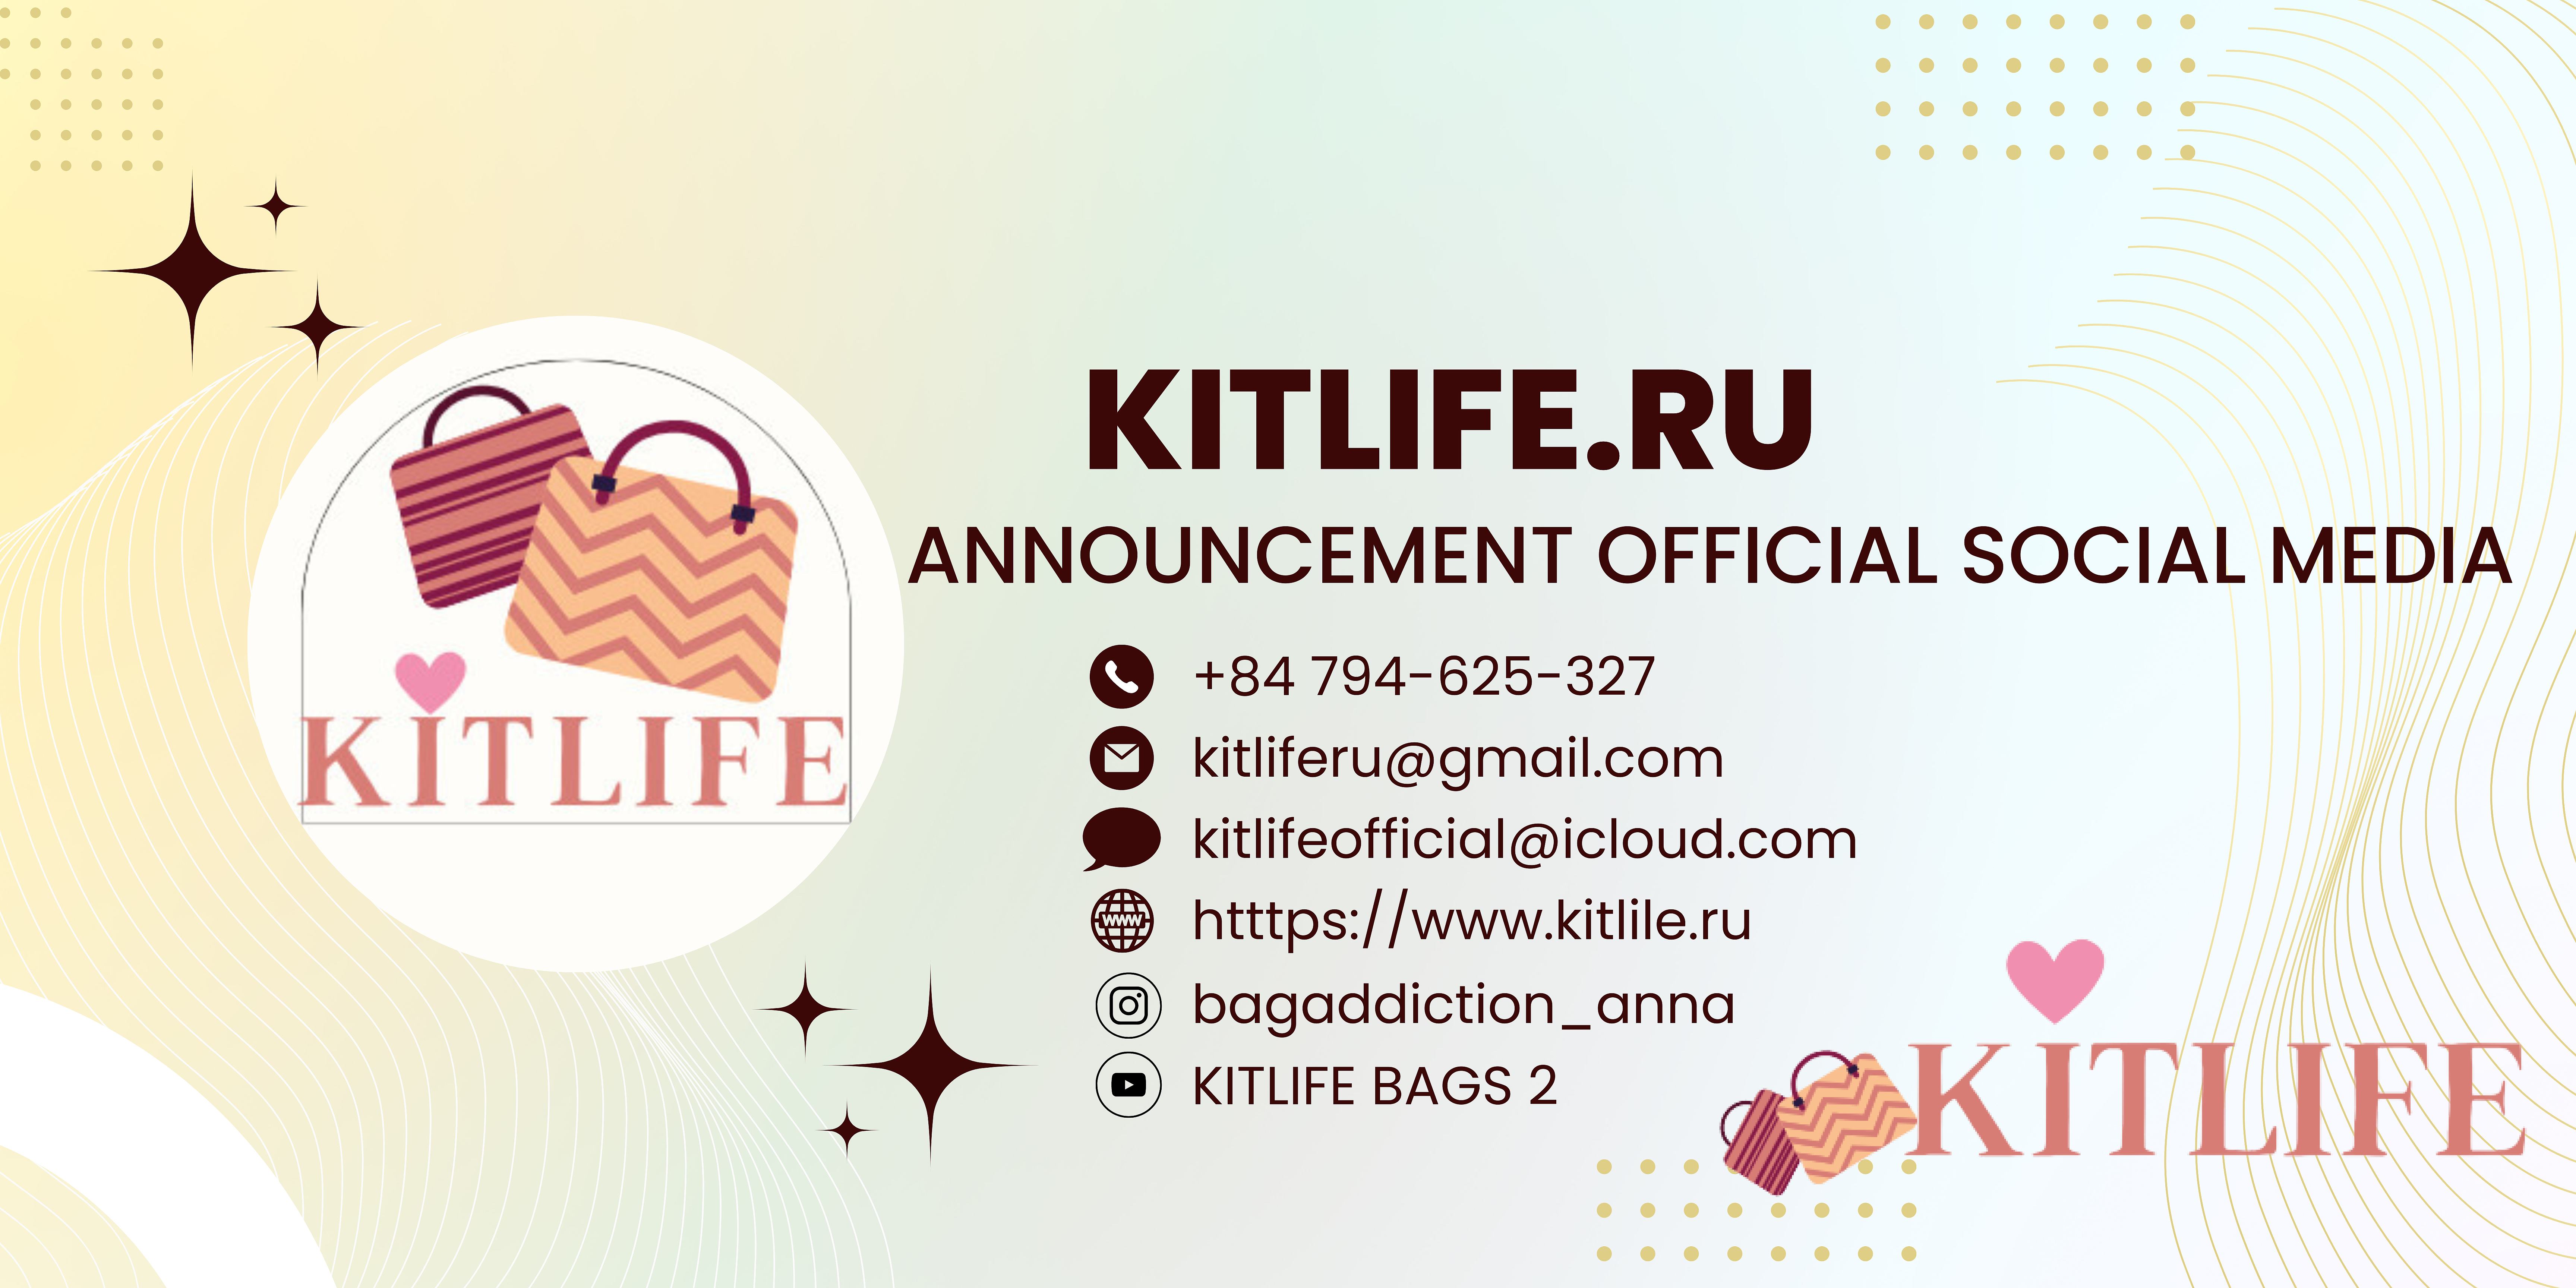 Kitlife.ru Official on Behance